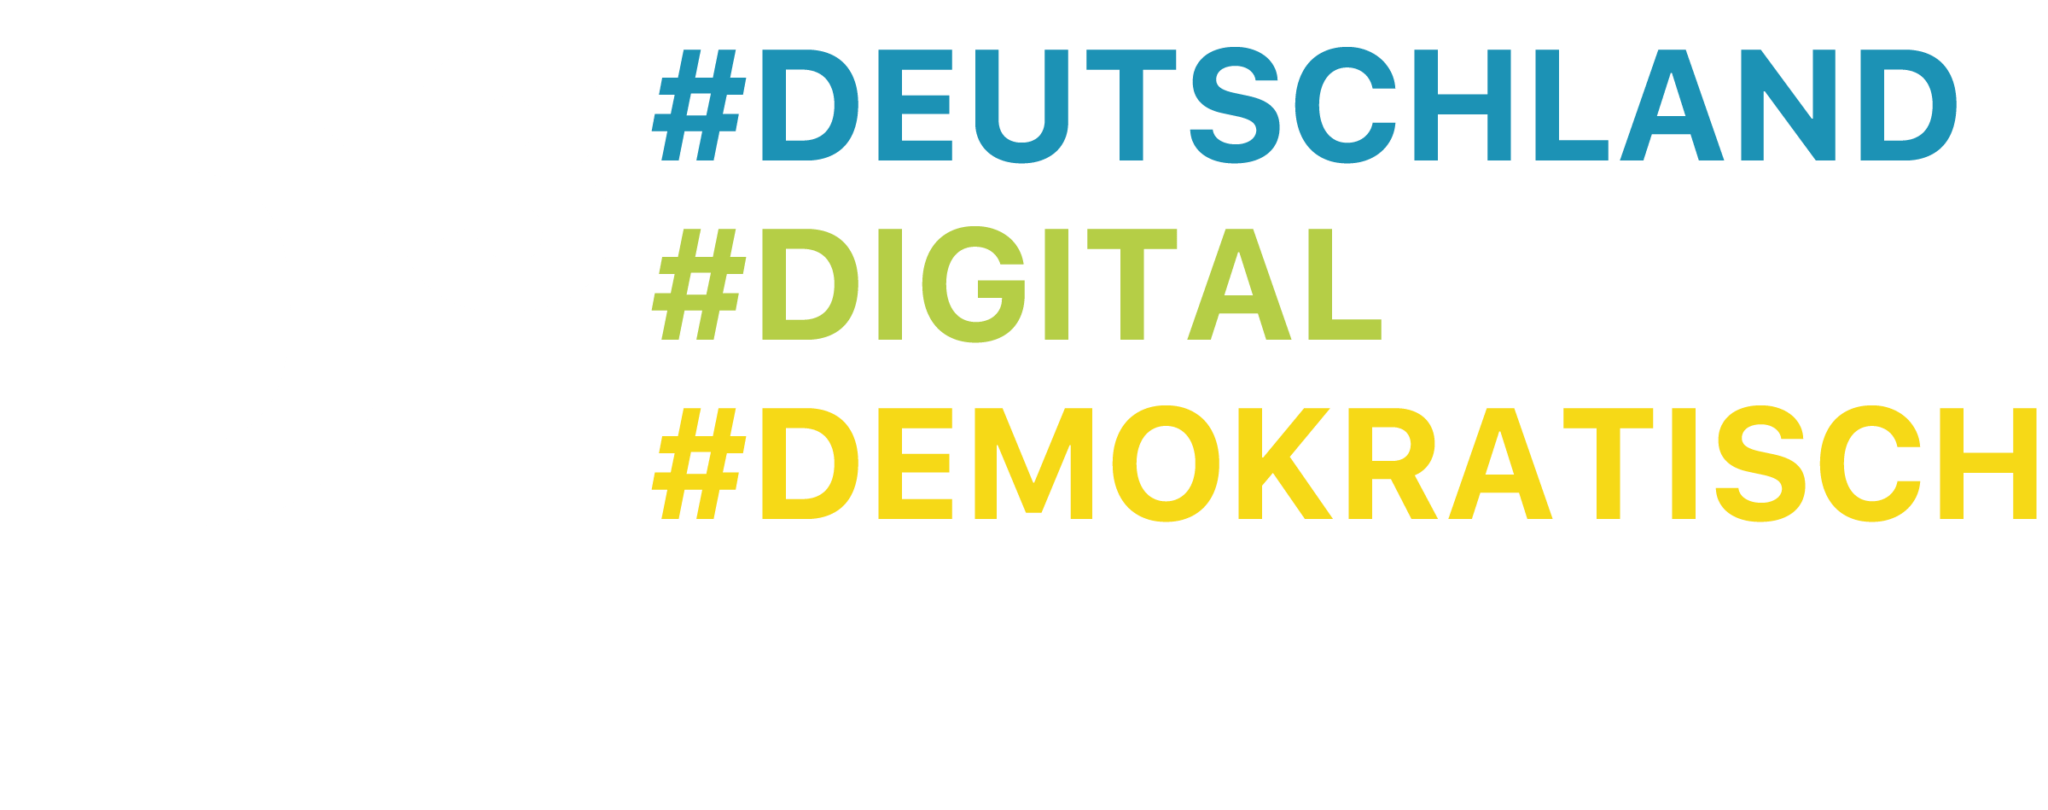 D³: #Deutschland #Digital #Demokratisch